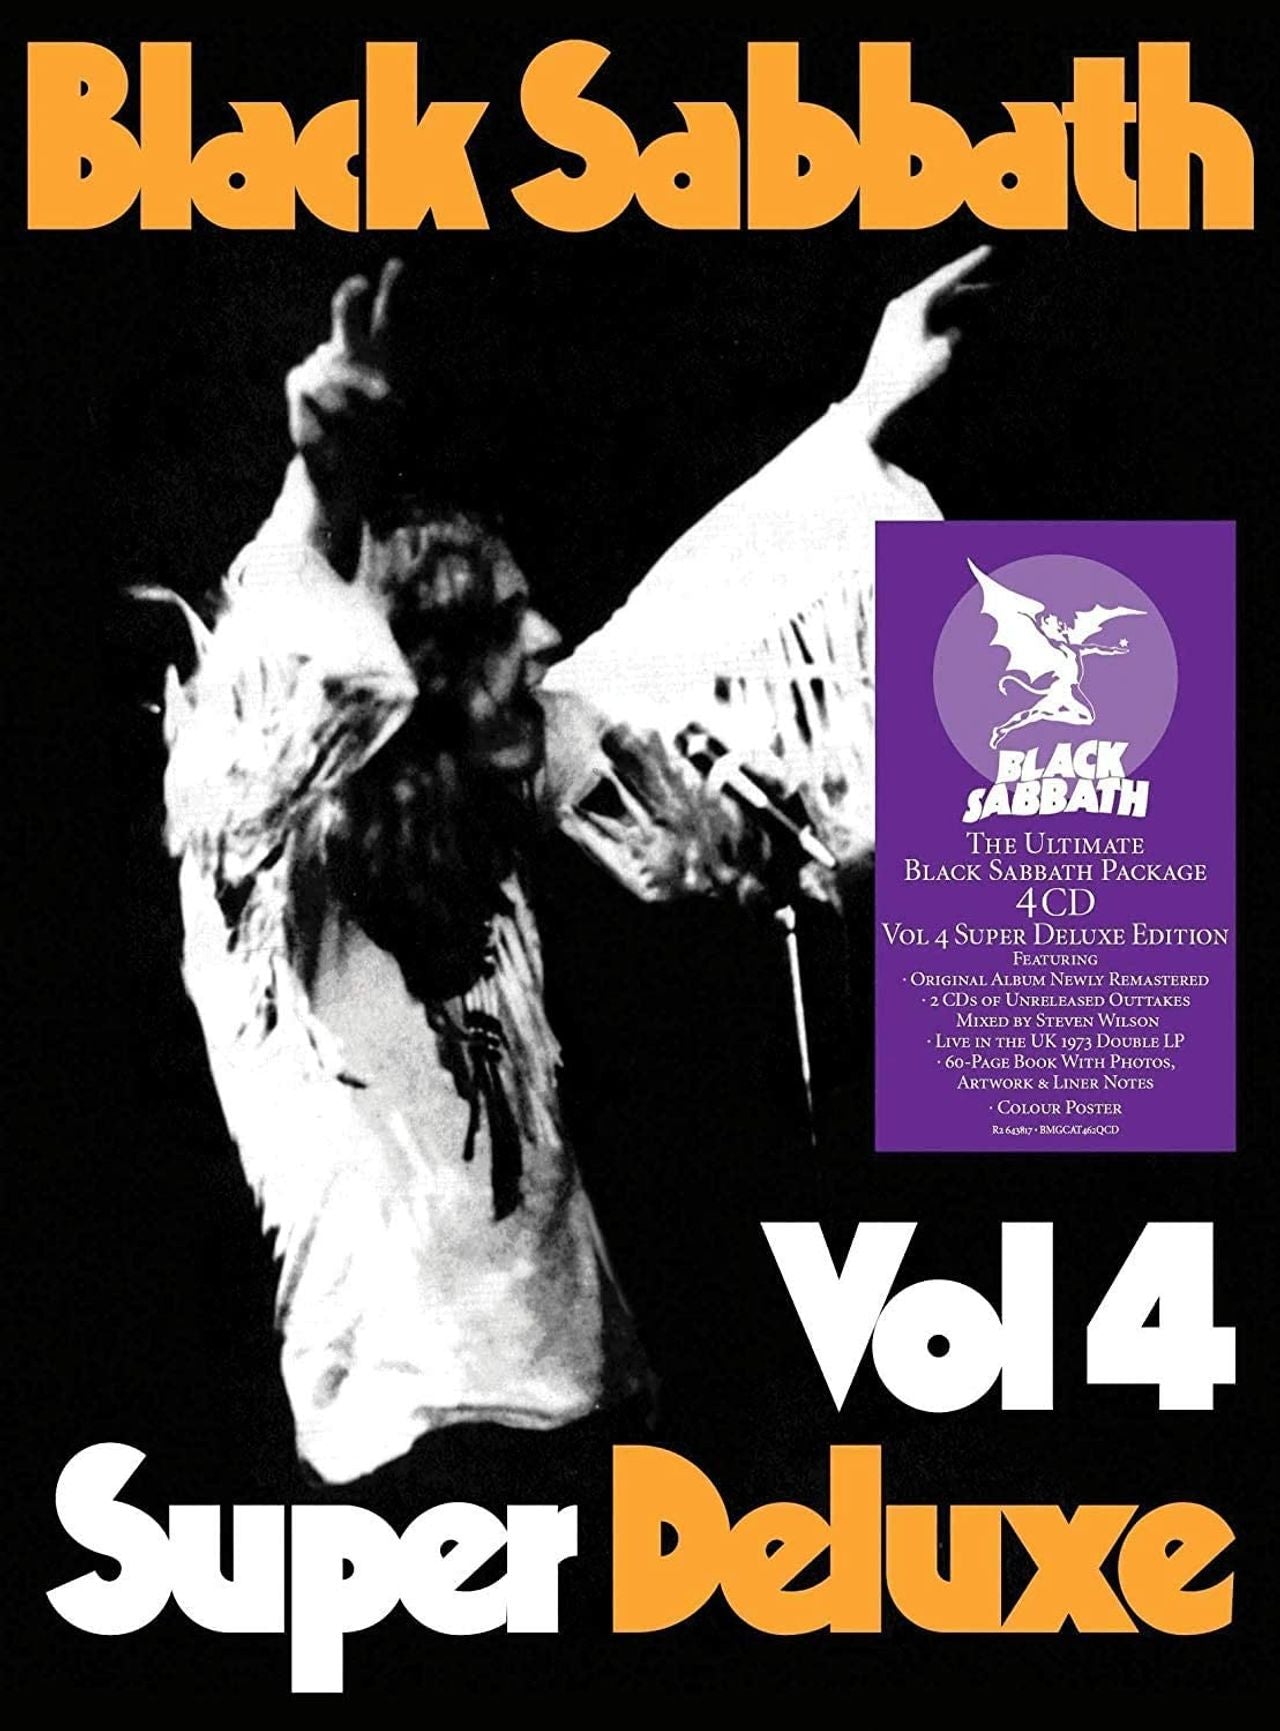 Black Sabbath Vol. 4 - Super Deluxe Edition (4CD) - Sealed UK Cd album —  RareVinyl.com